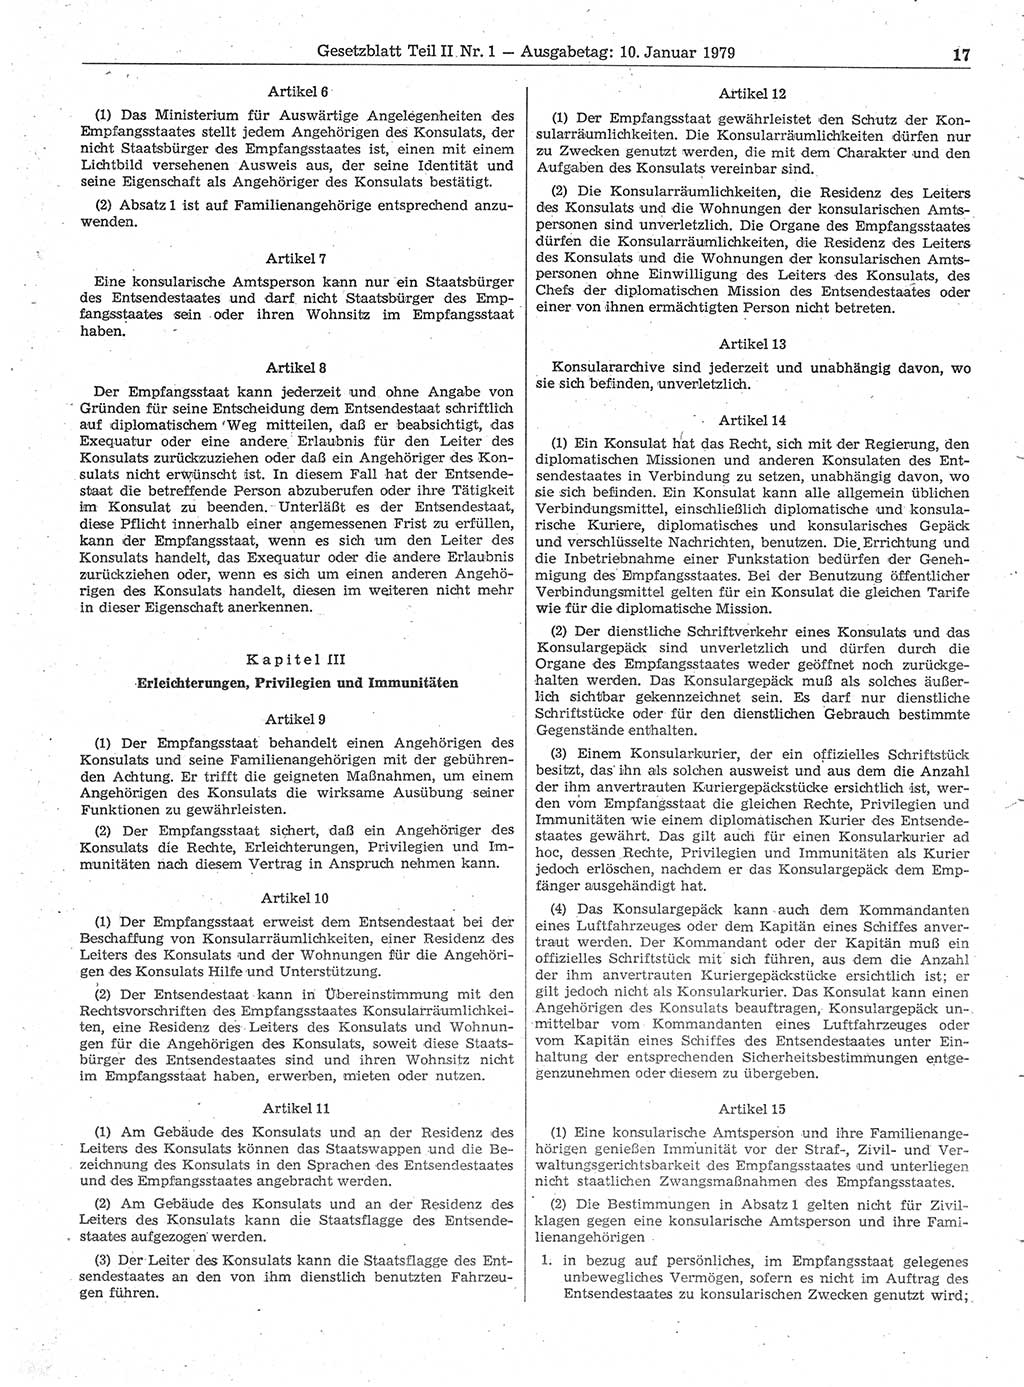 Gesetzblatt (GBl.) der Deutschen Demokratischen Republik (DDR) Teil ⅠⅠ 1979, Seite 17 (GBl. DDR ⅠⅠ 1979, S. 17)